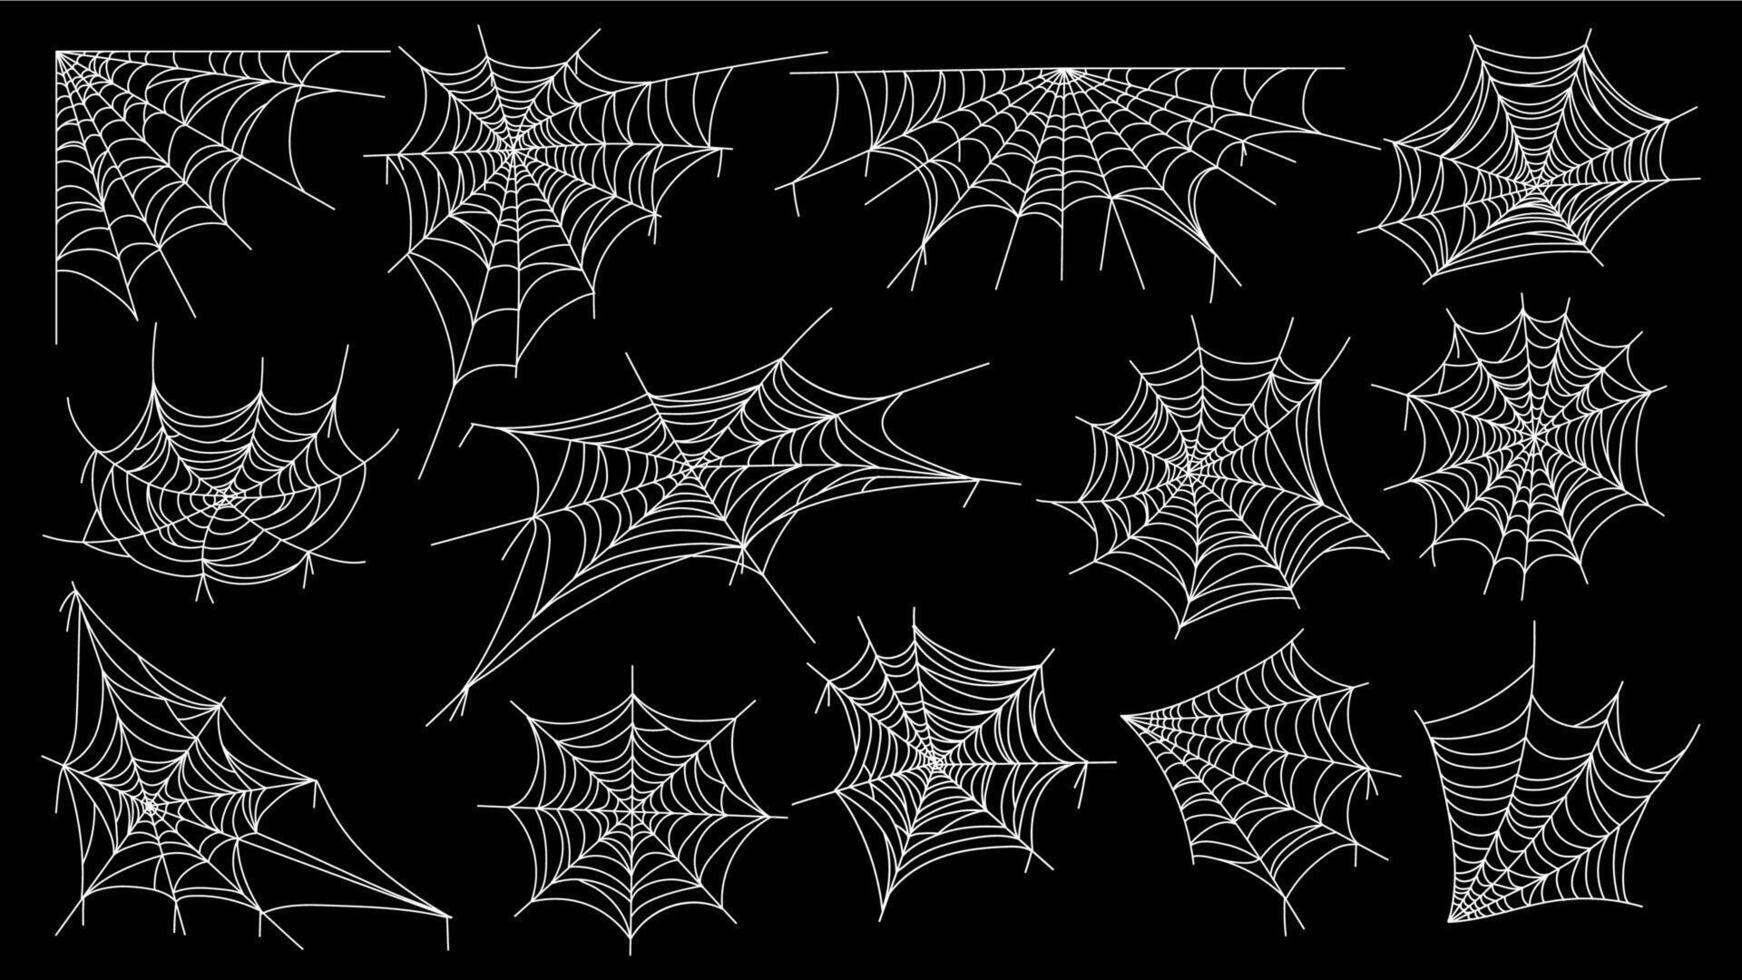 ragnatela. Halloween ragno ragnatela orrore Gotico sagome per decorazione, spaventoso netto con ingarbugliato sospeso insetti. vettore isolato collezione